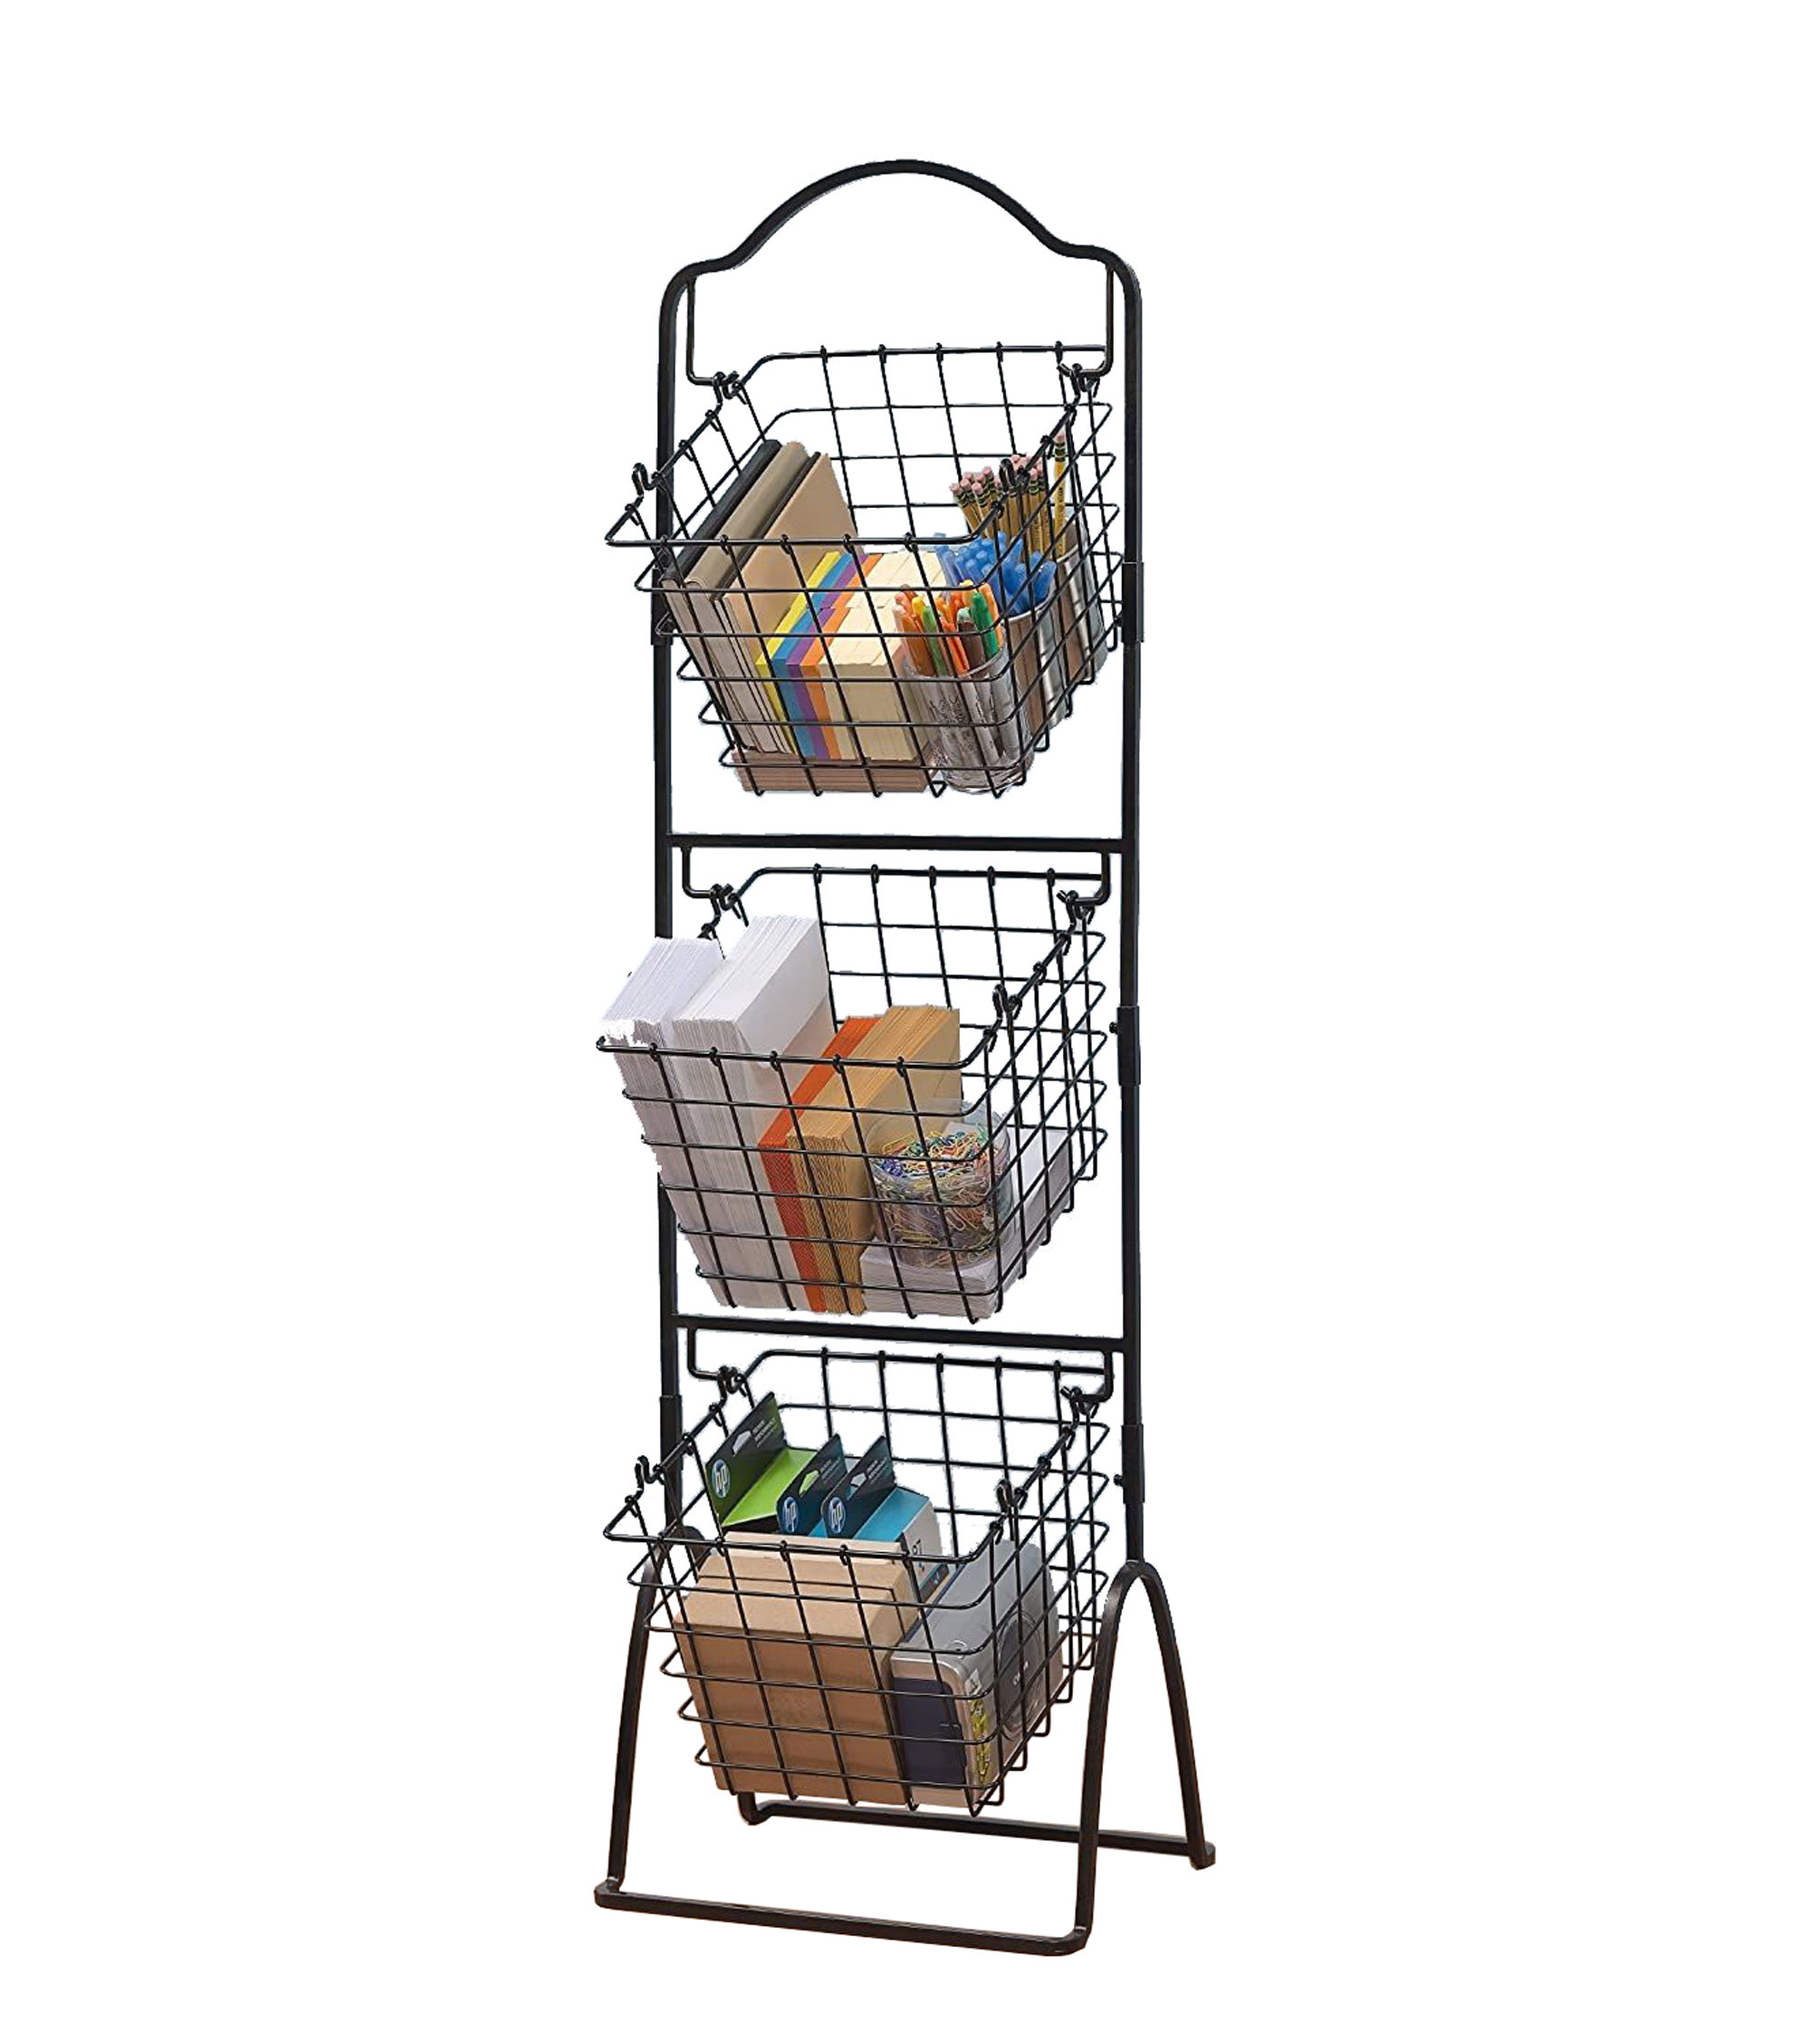 https://assets.wfcdn.com/im/44788581/compr-r85/2200/220023958/candler-3-tier-metal-market-basket-display-rack-for-stores-offices-home-use-black.jpg